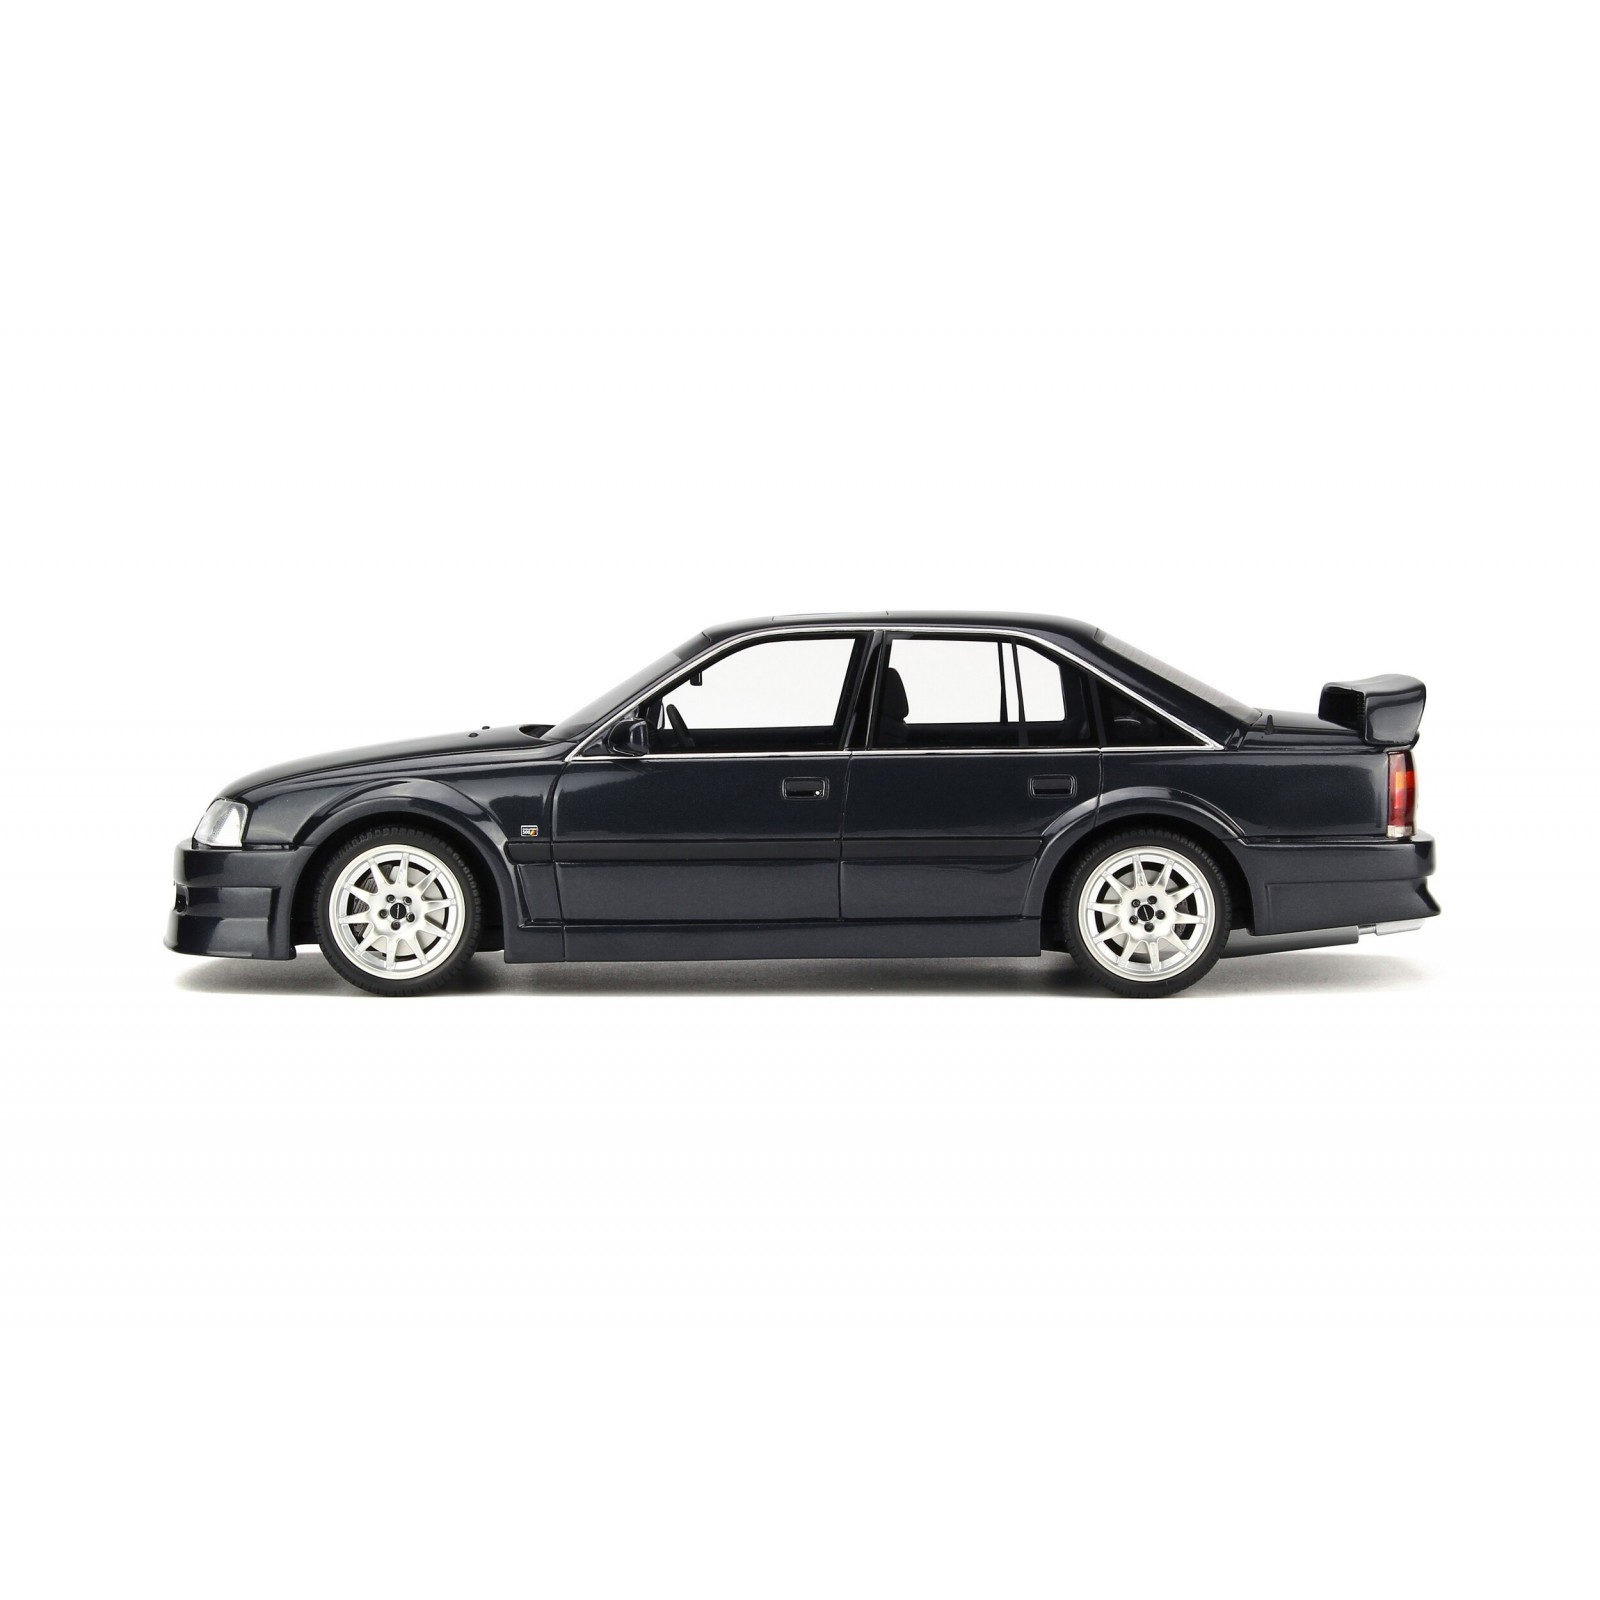 国内最安値■Otto 1/18 1990 オペルオメガ Evo 500 メタリックブラック 乗用車